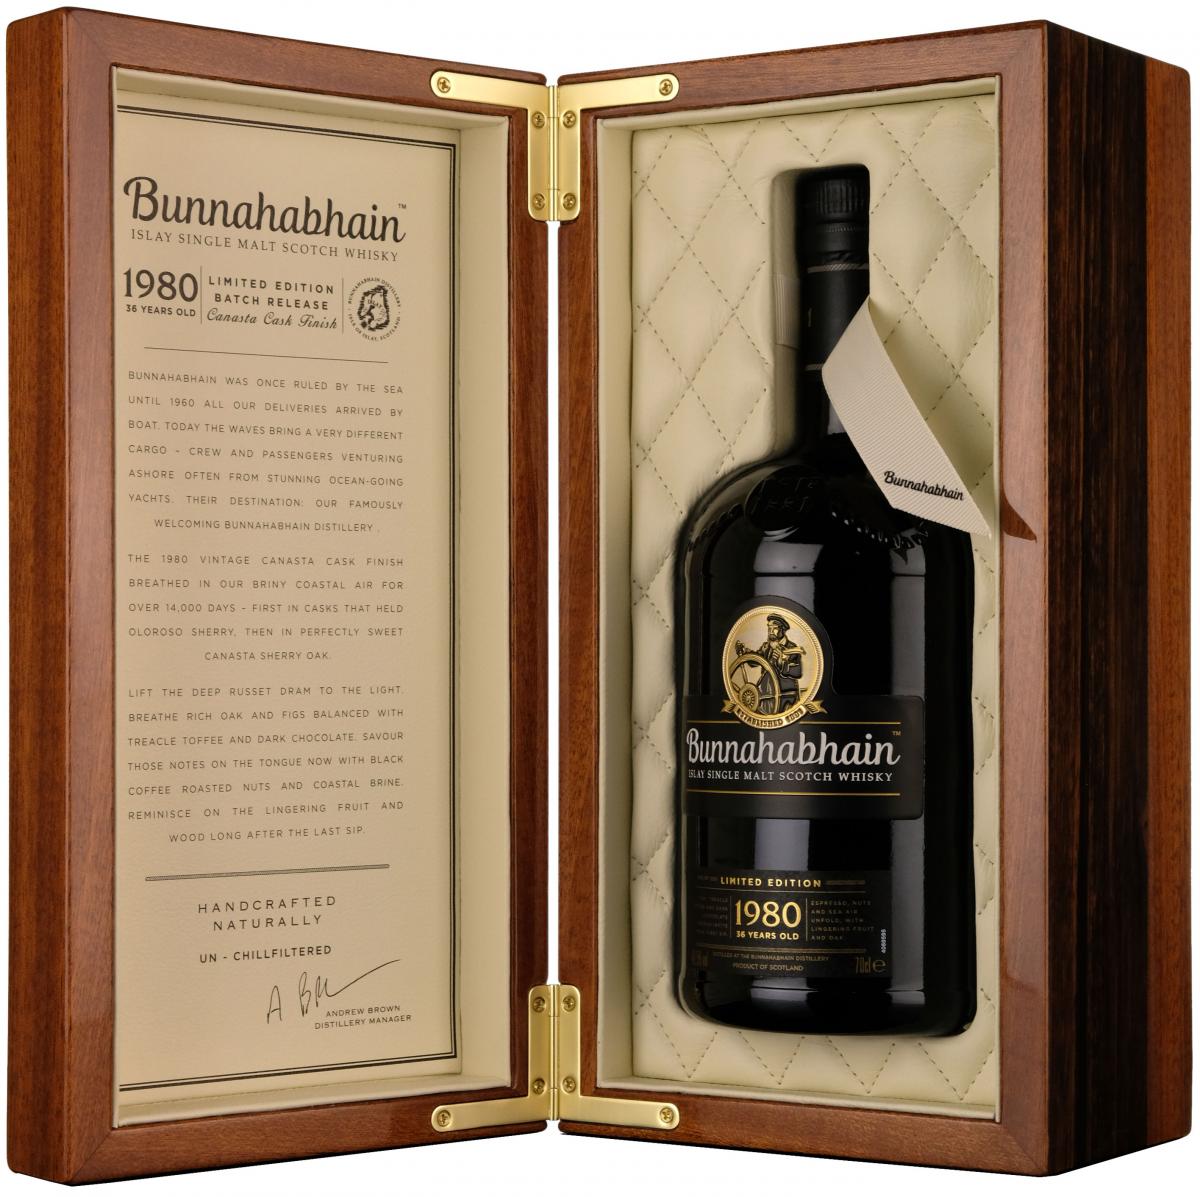 Bunnahabhain 1980, 36 year old, islay single malt scotch whisky,